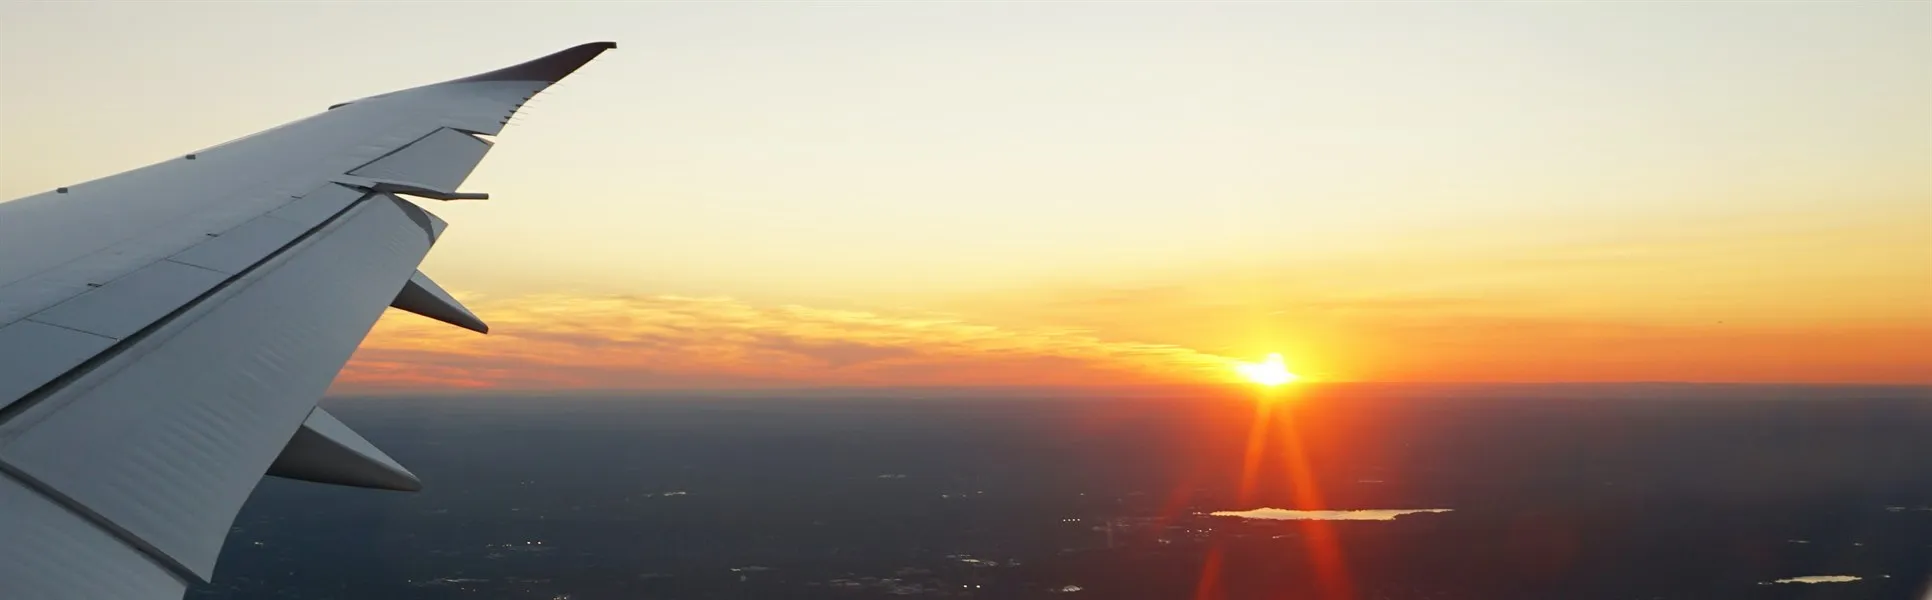 Flygplansvinge och solnedgång genom ett flygplansfönster